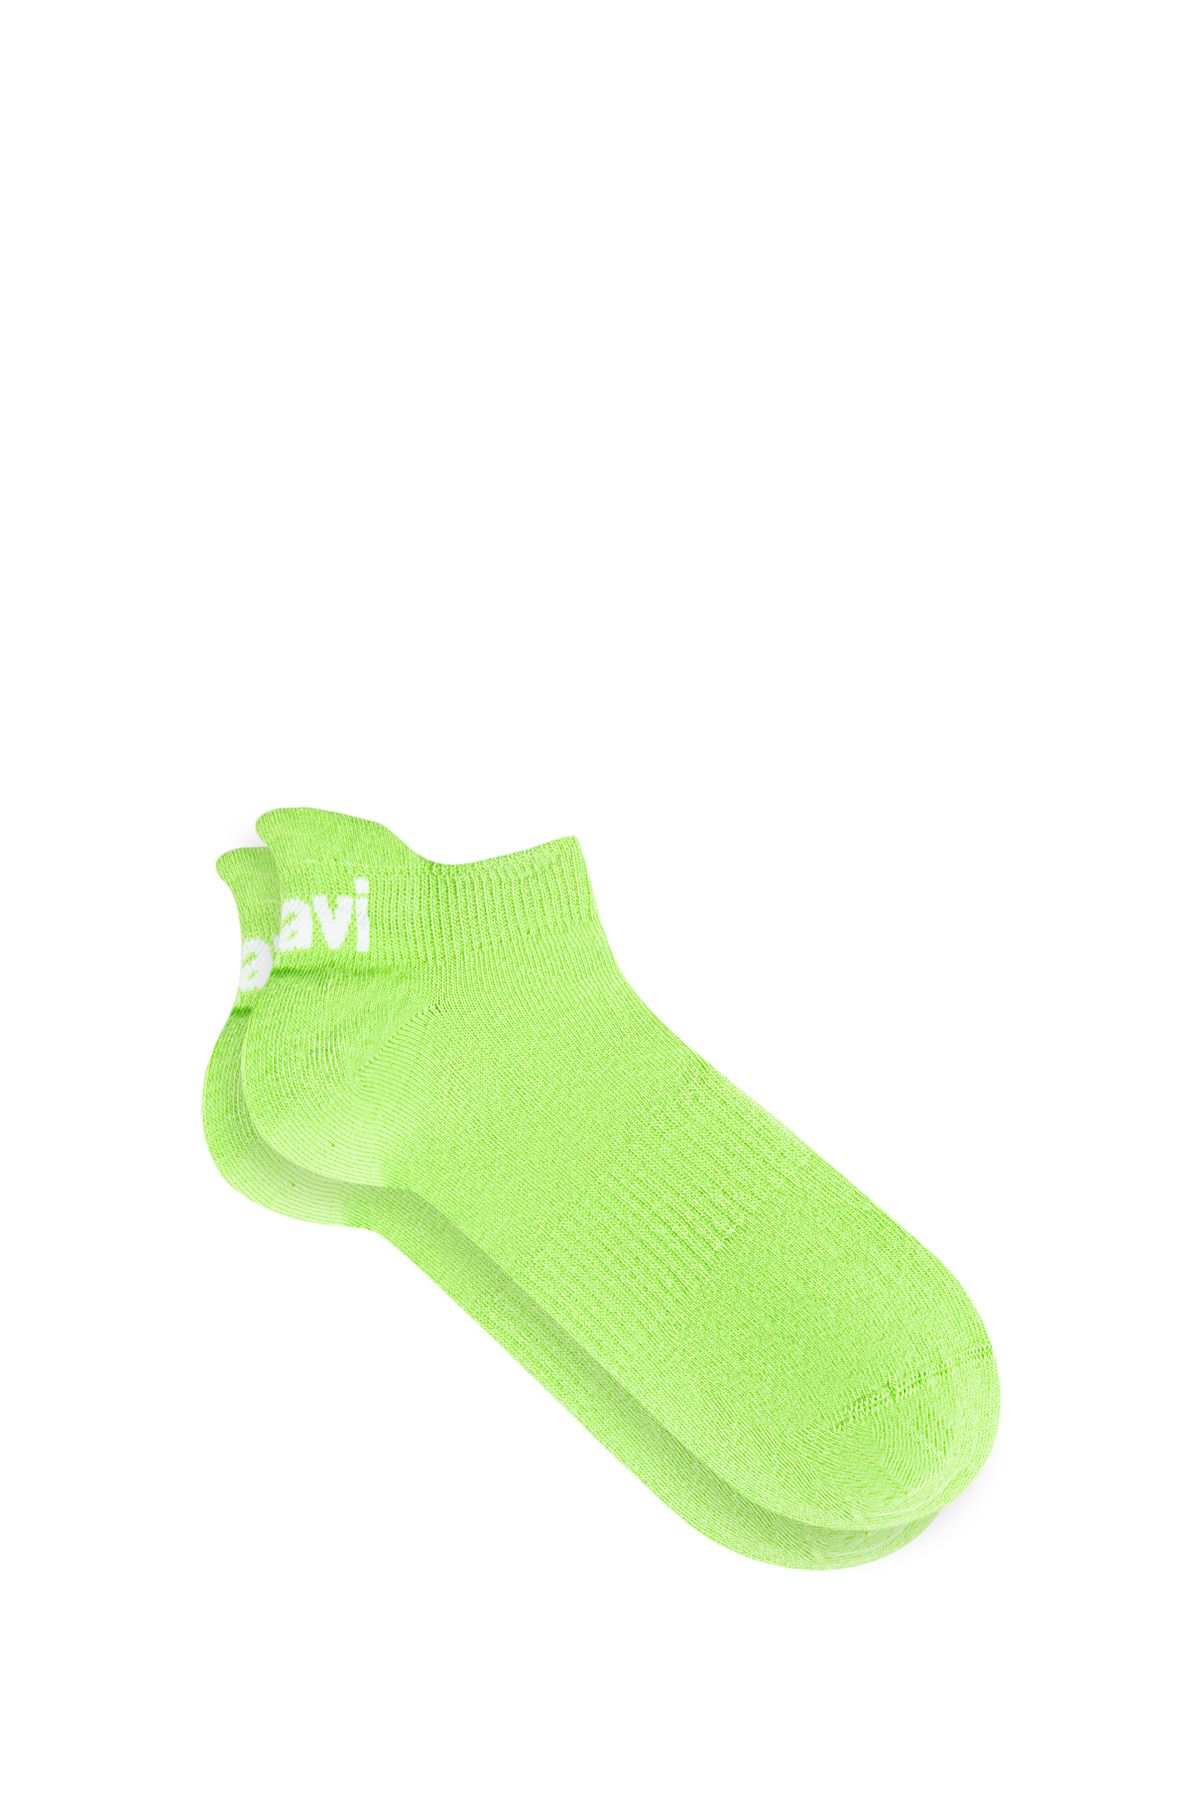 Mavi Yeşil Patik Çorabı 0910779-71532